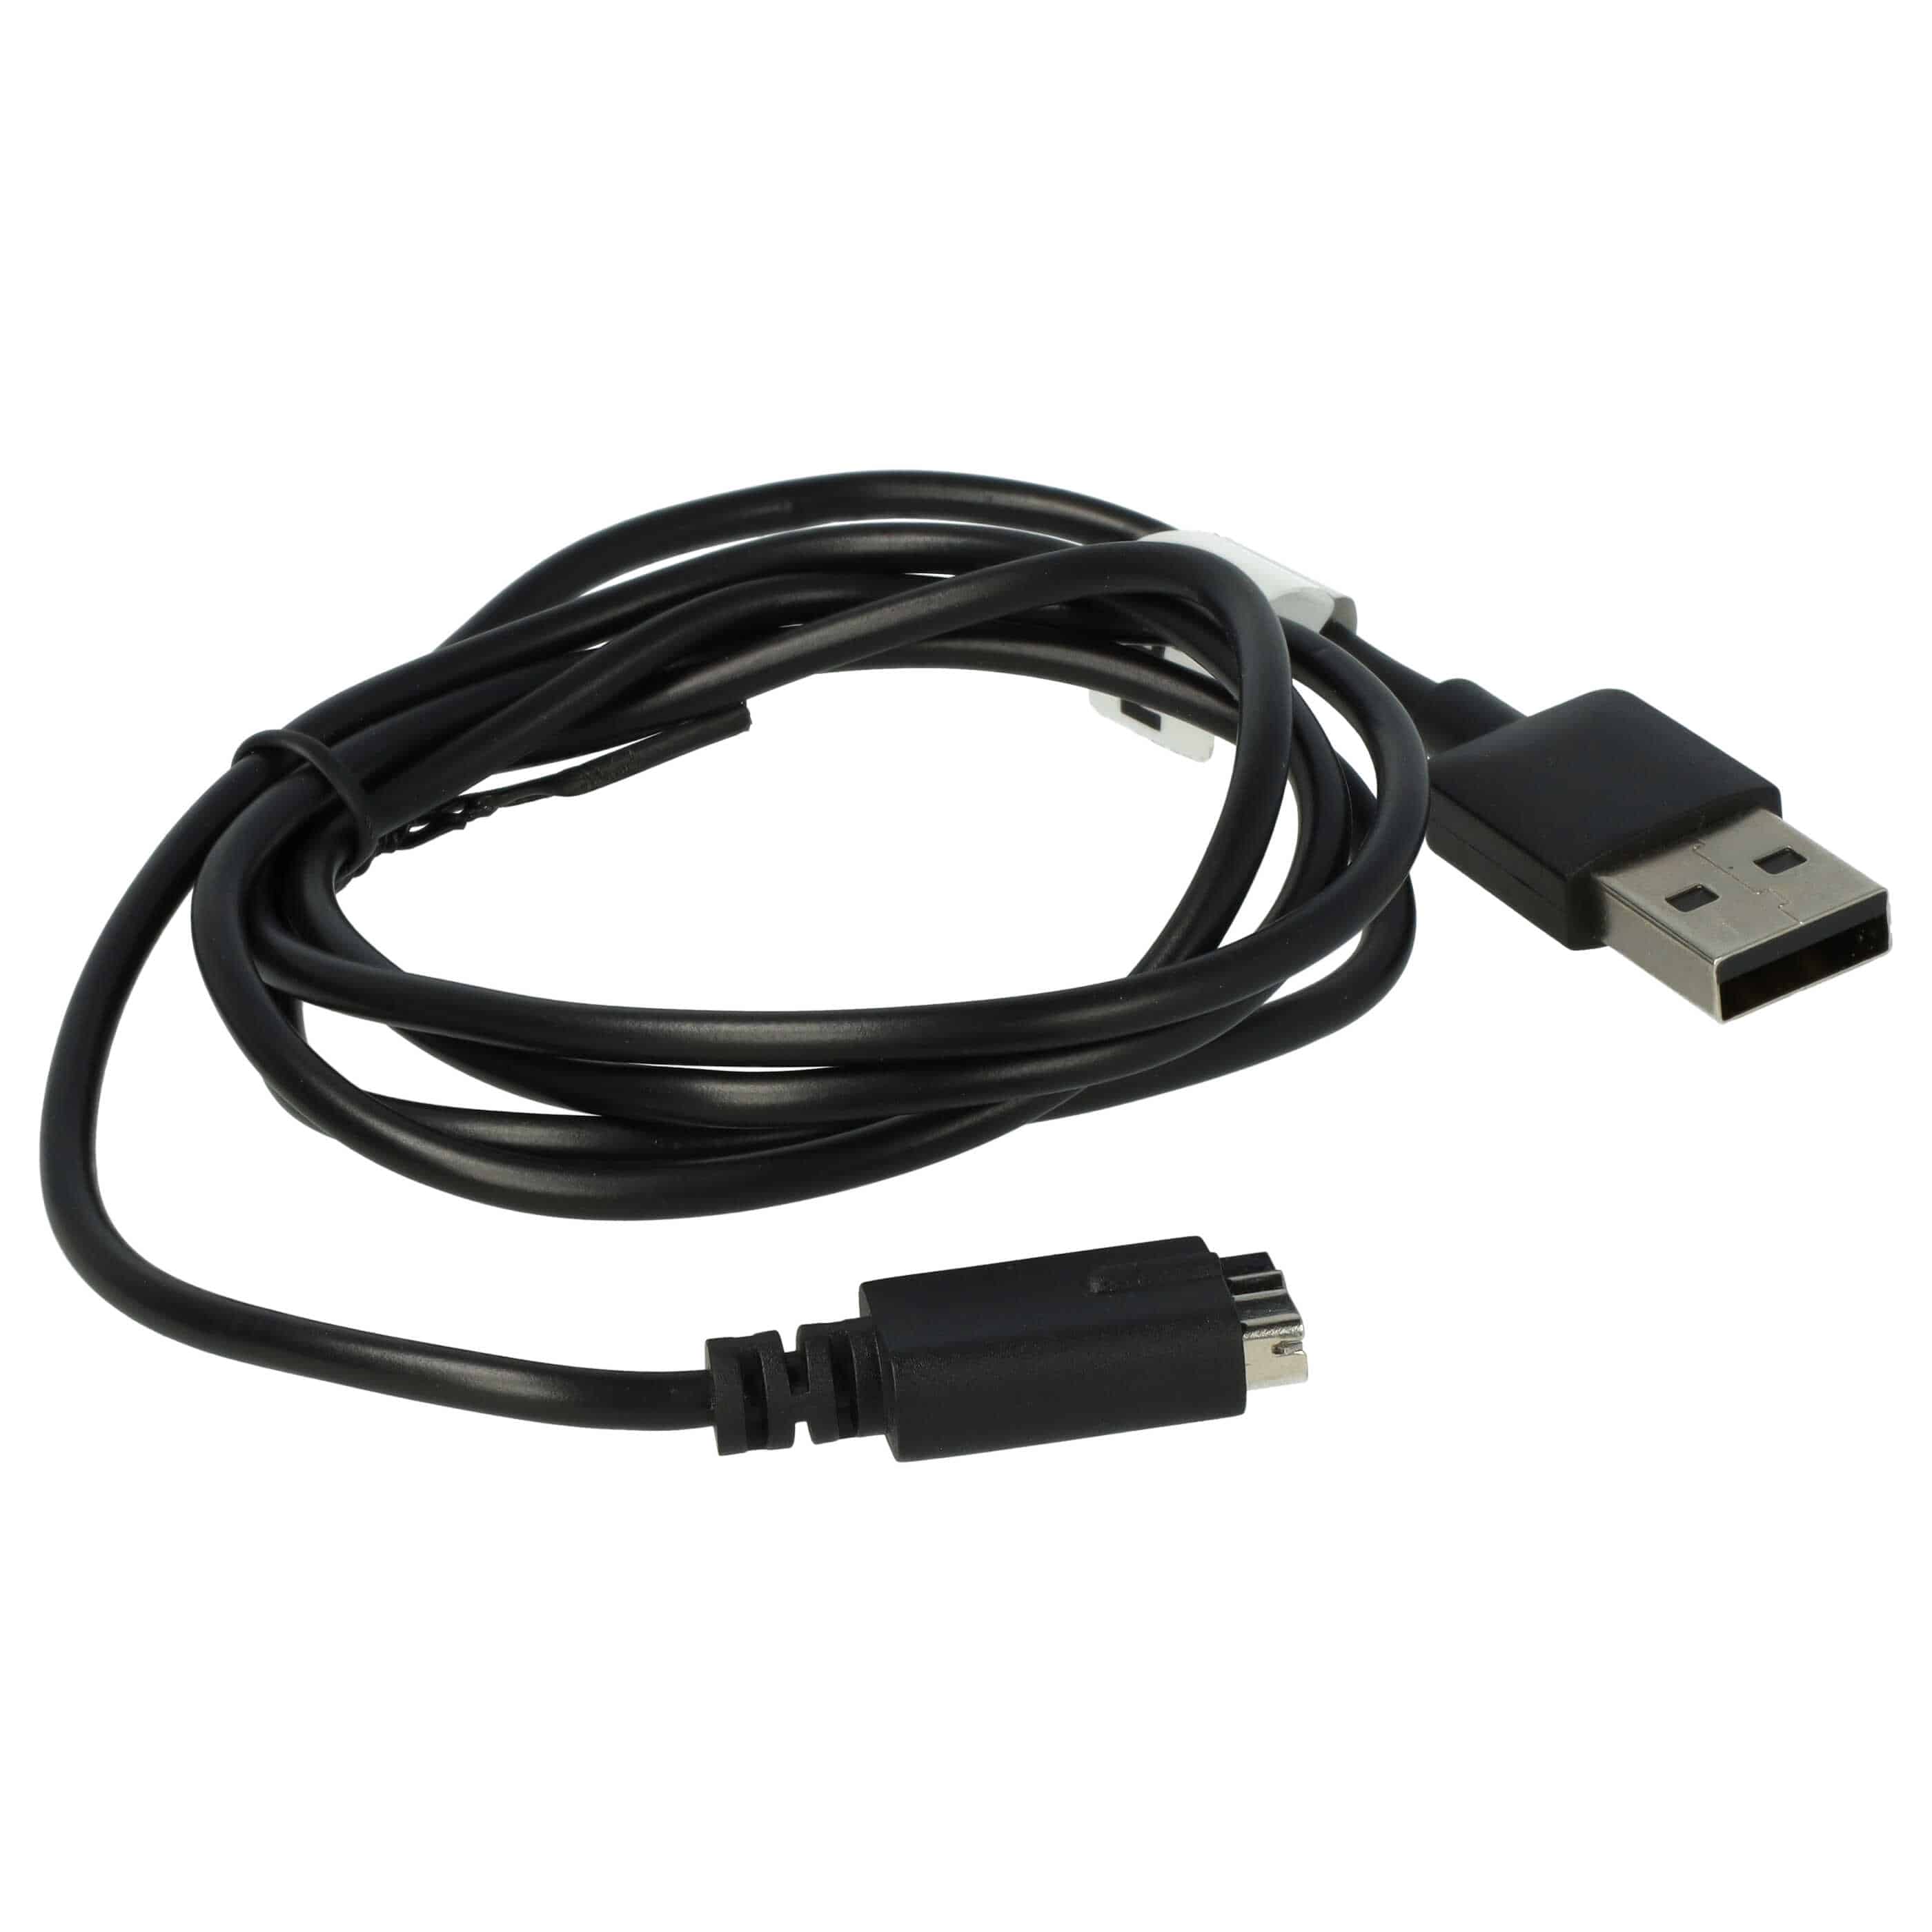 Cable de carga USB para smartwatch Polar M430 - negro 100 cm